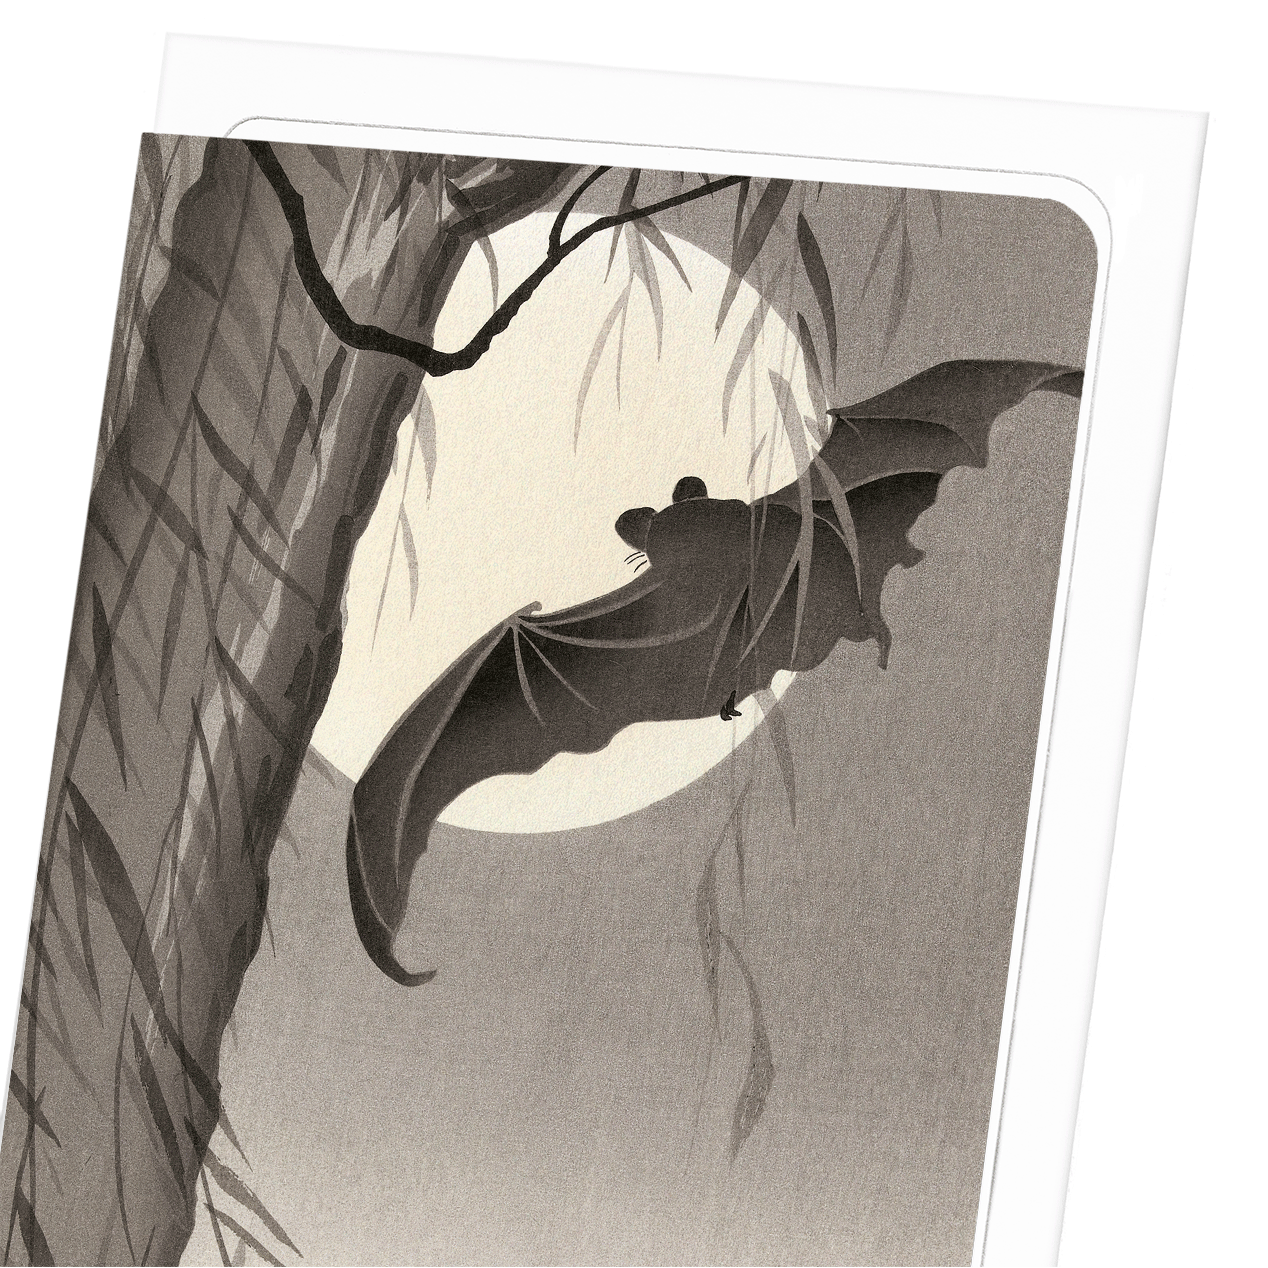 TWO BATS IN FULL MOON (C.1910)